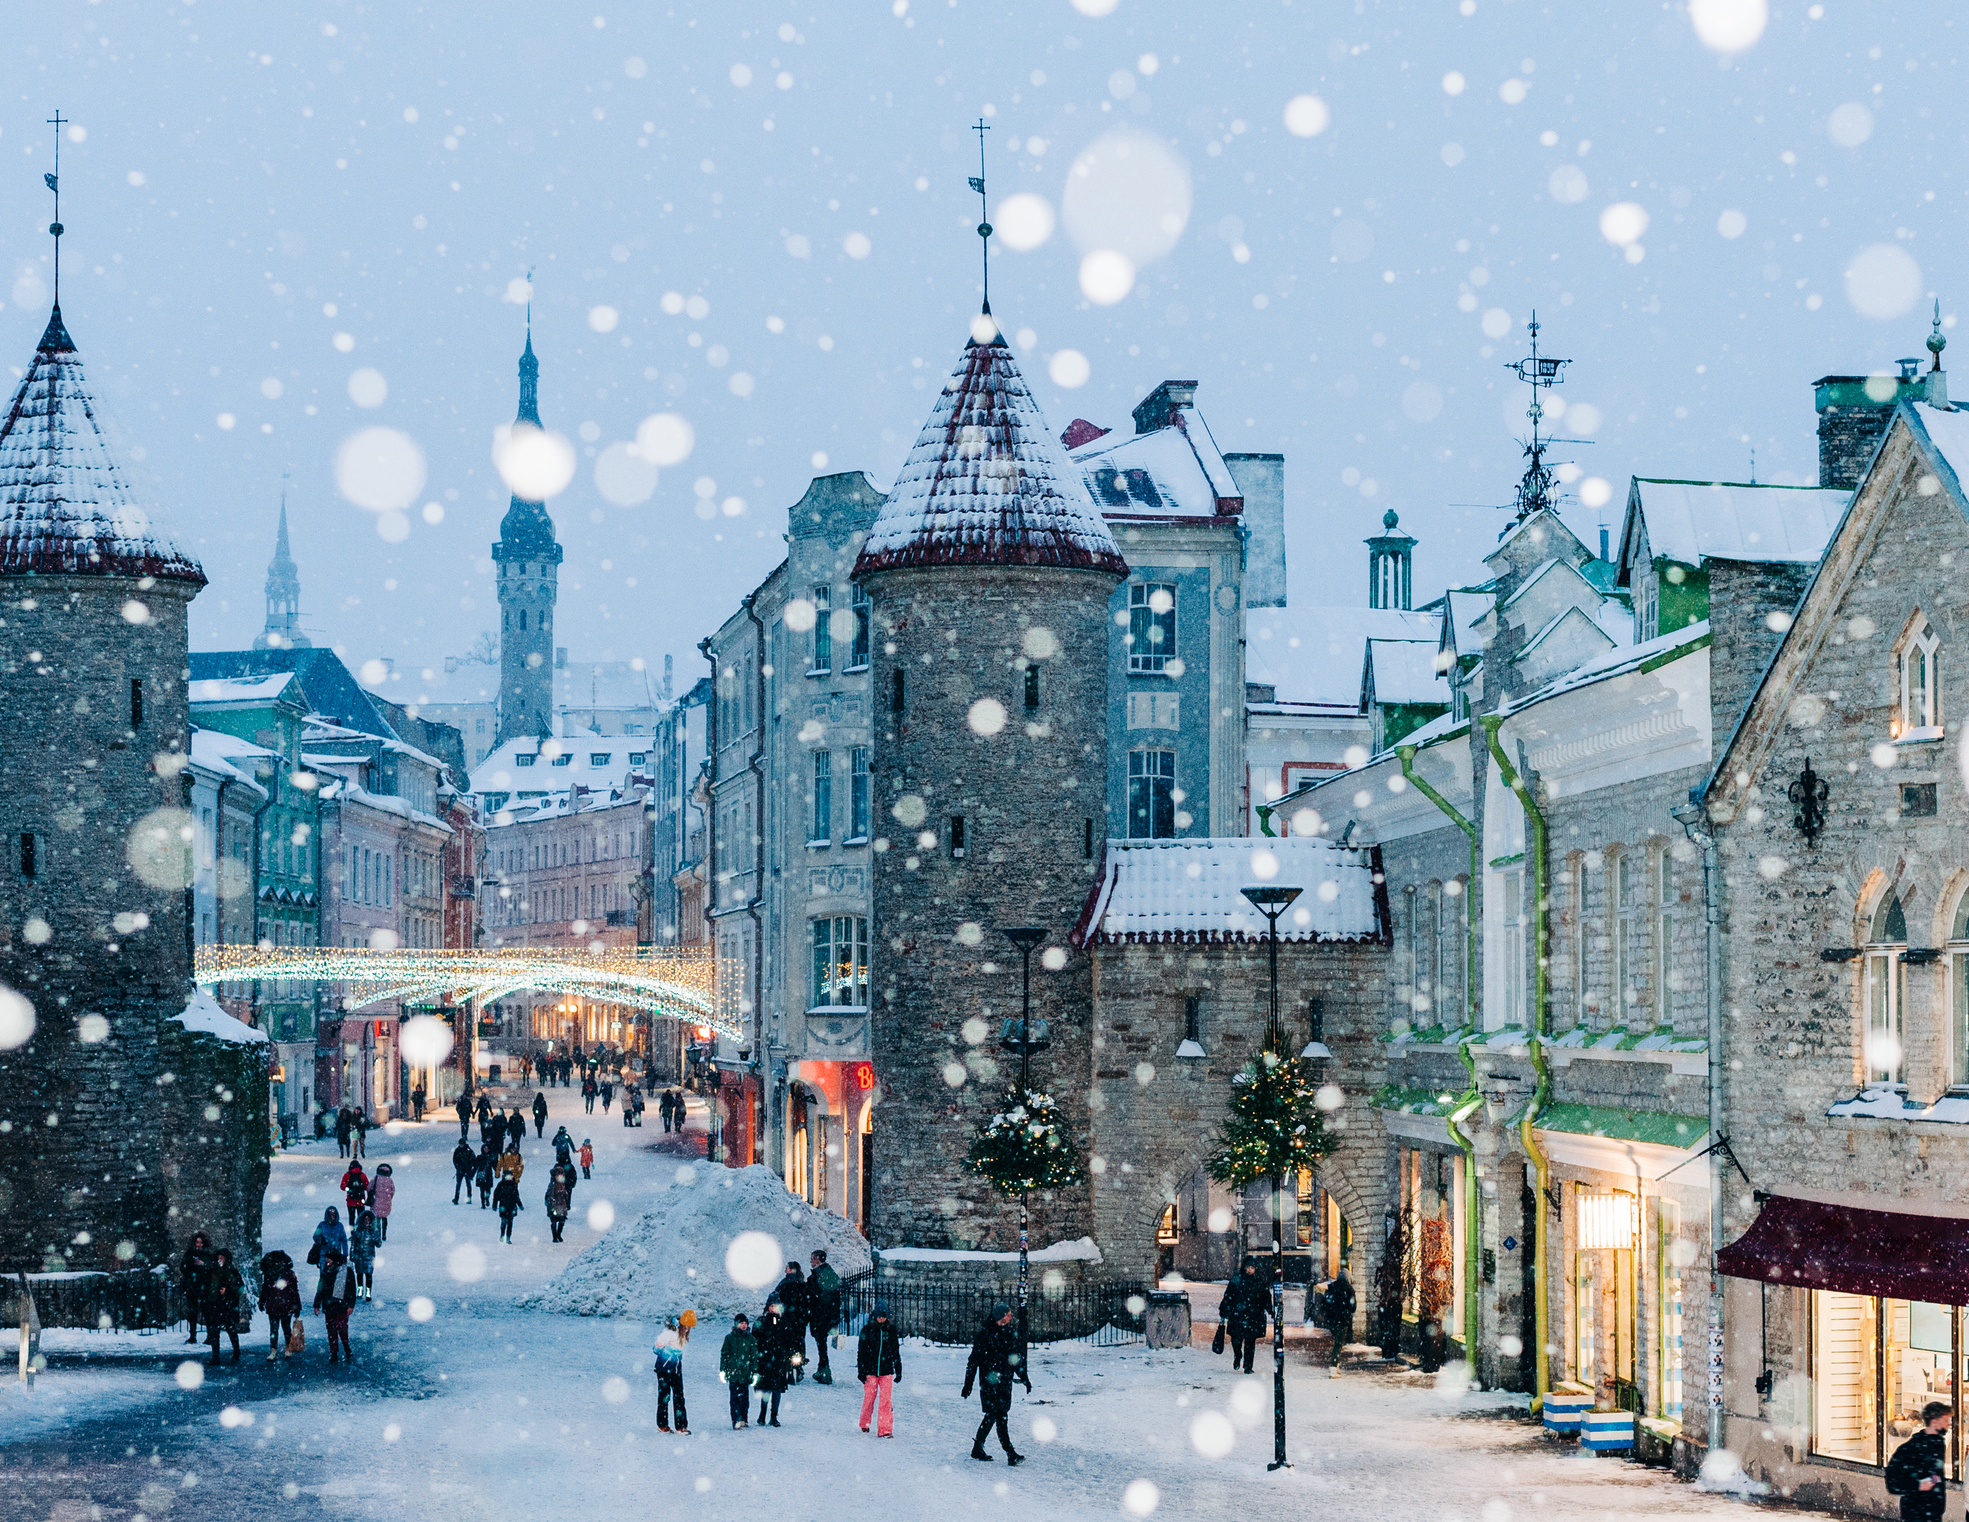 Street view of Tallinn Estonia